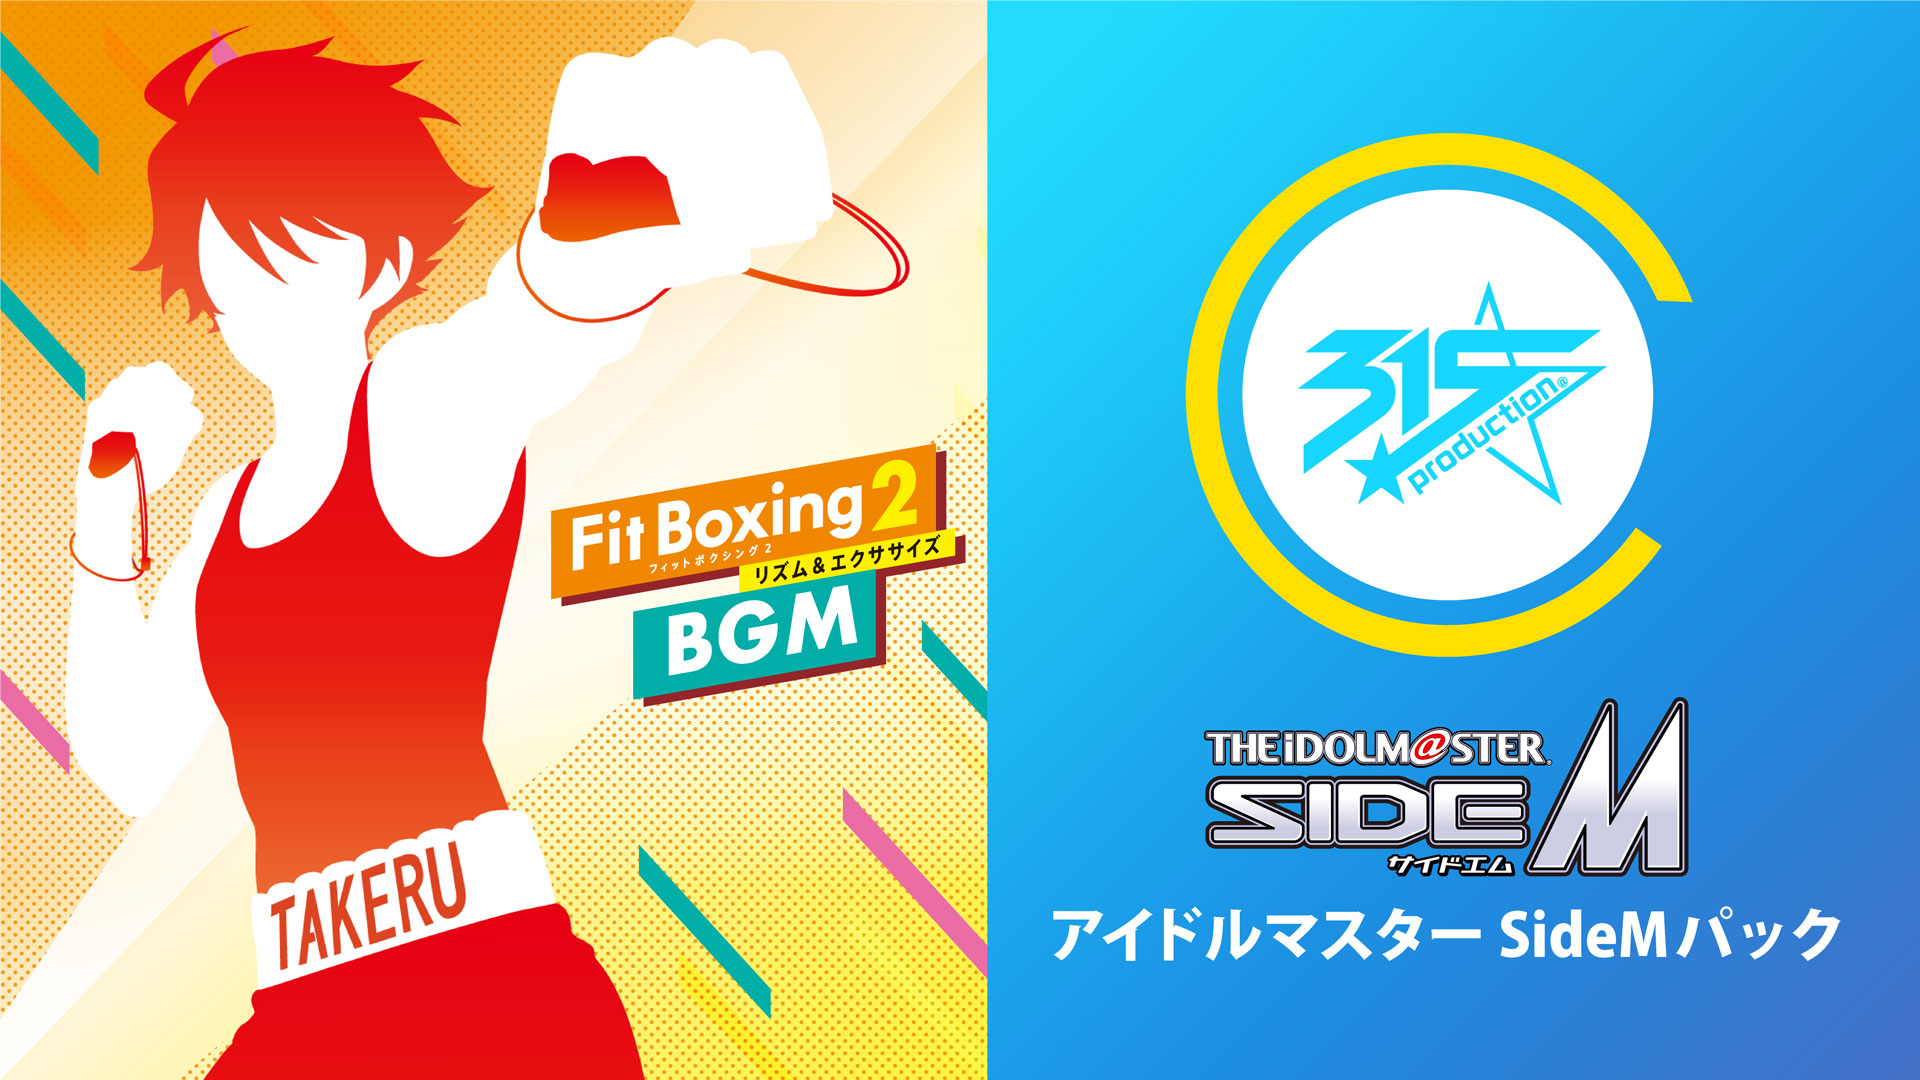 【新品・未開封】Fit Boxing 2 リズム＆エクササイズ